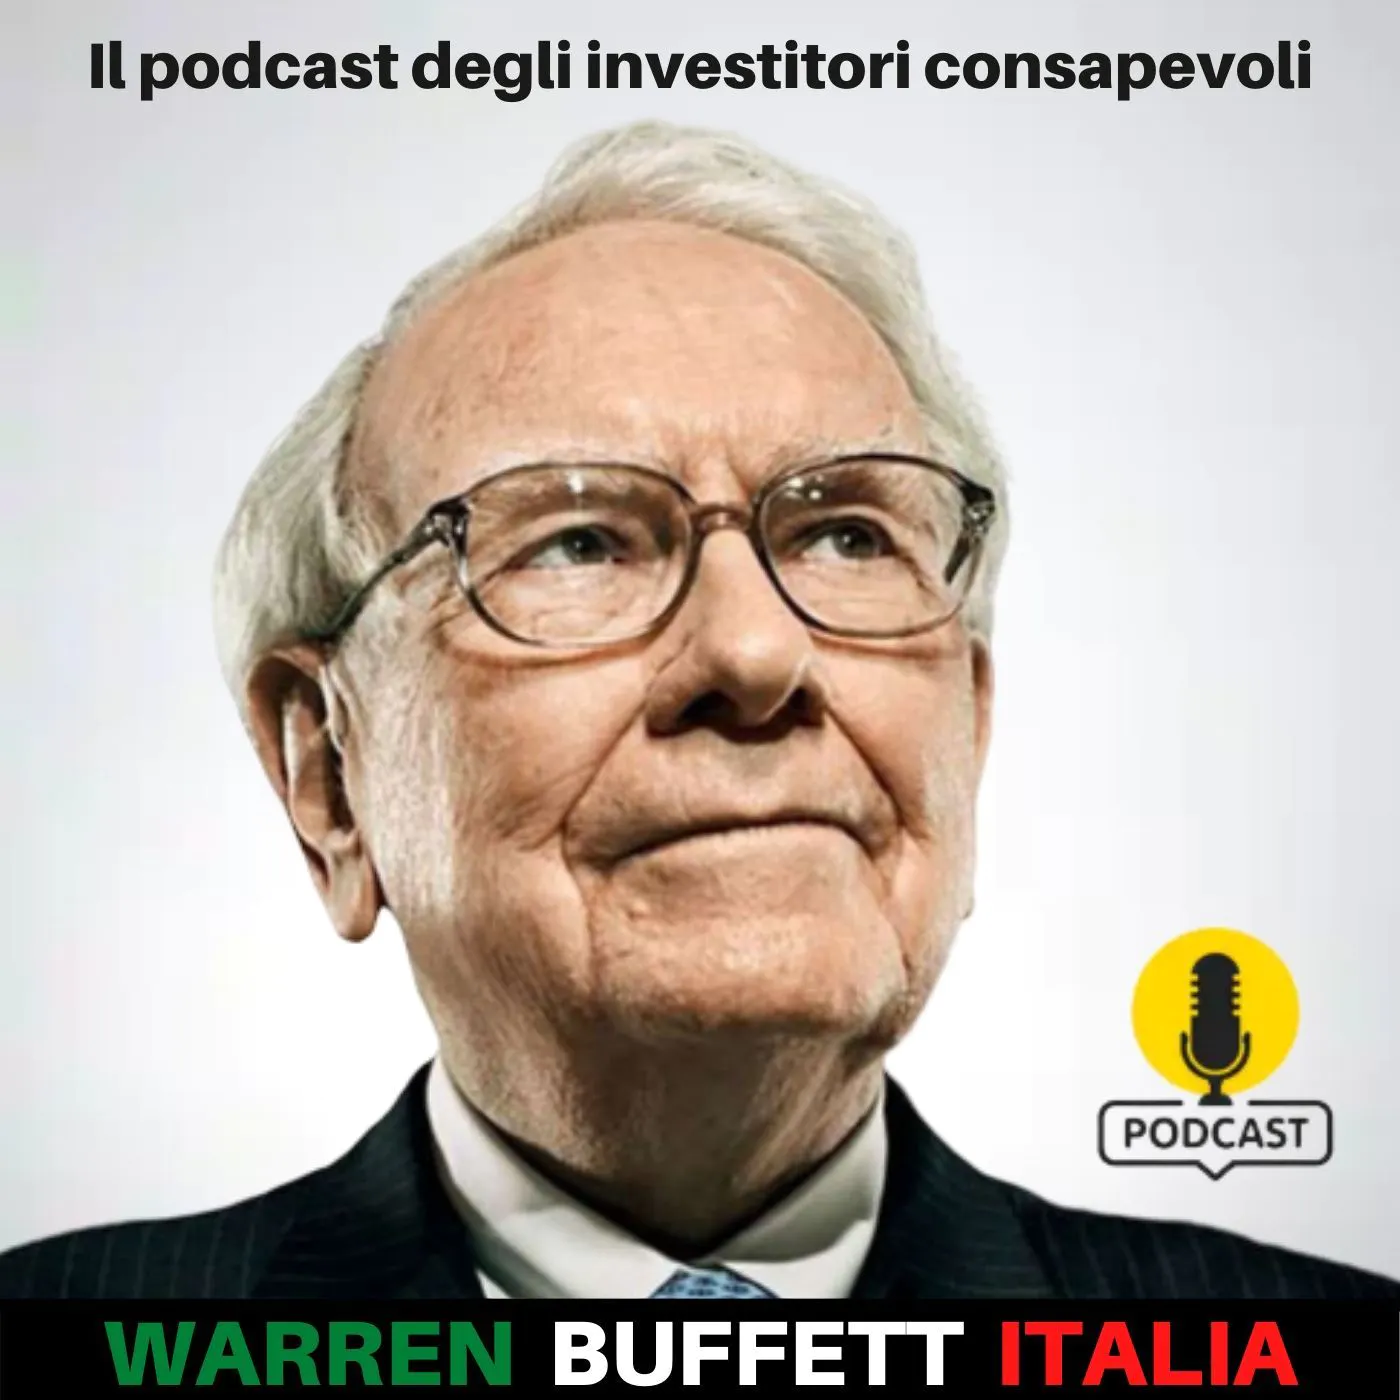 Il podcast degli investitori consapevoli - Warren Buffet Italia